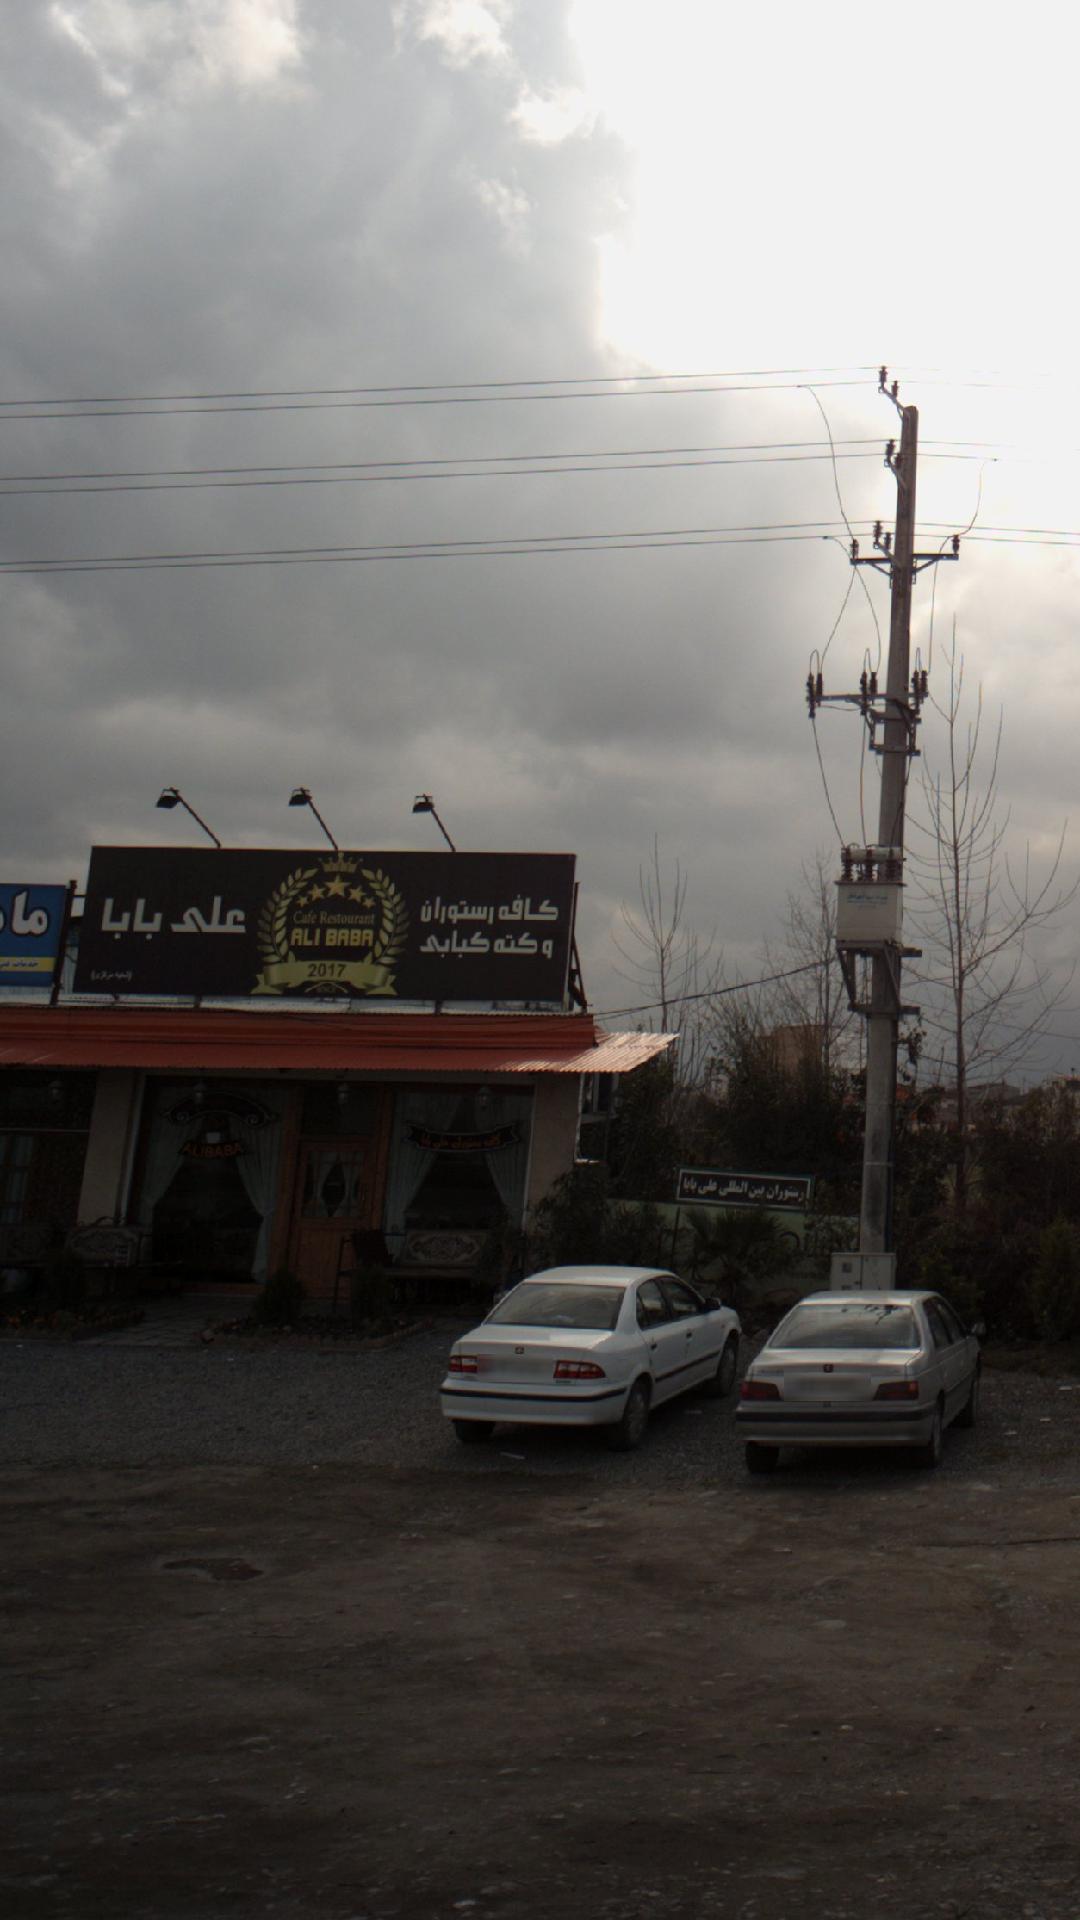 کافه رستوران و کته کبابی علی بابا